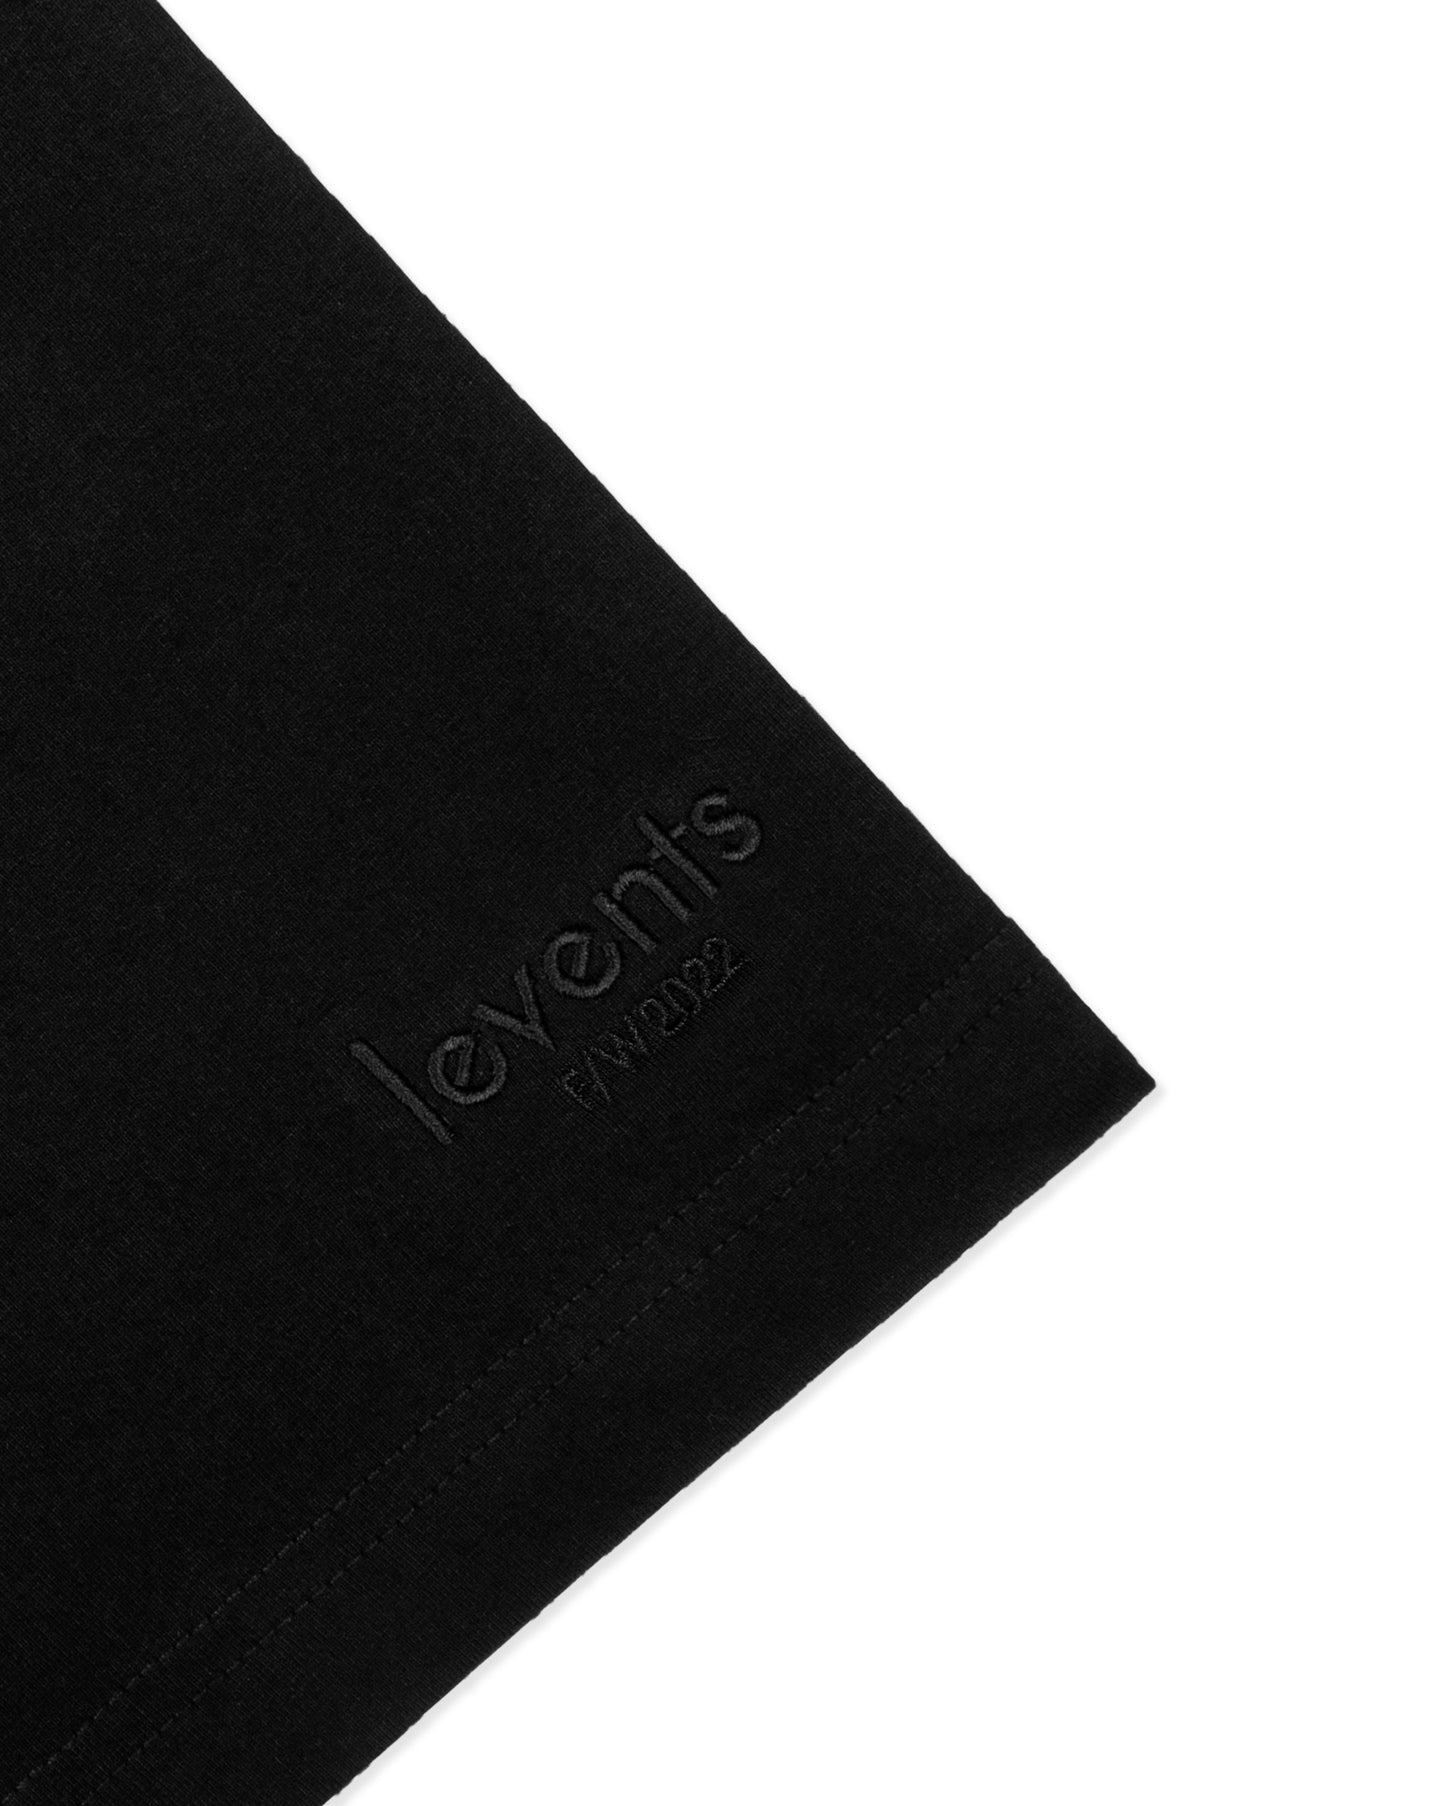 Levents® Draw Icon Tee/ Black